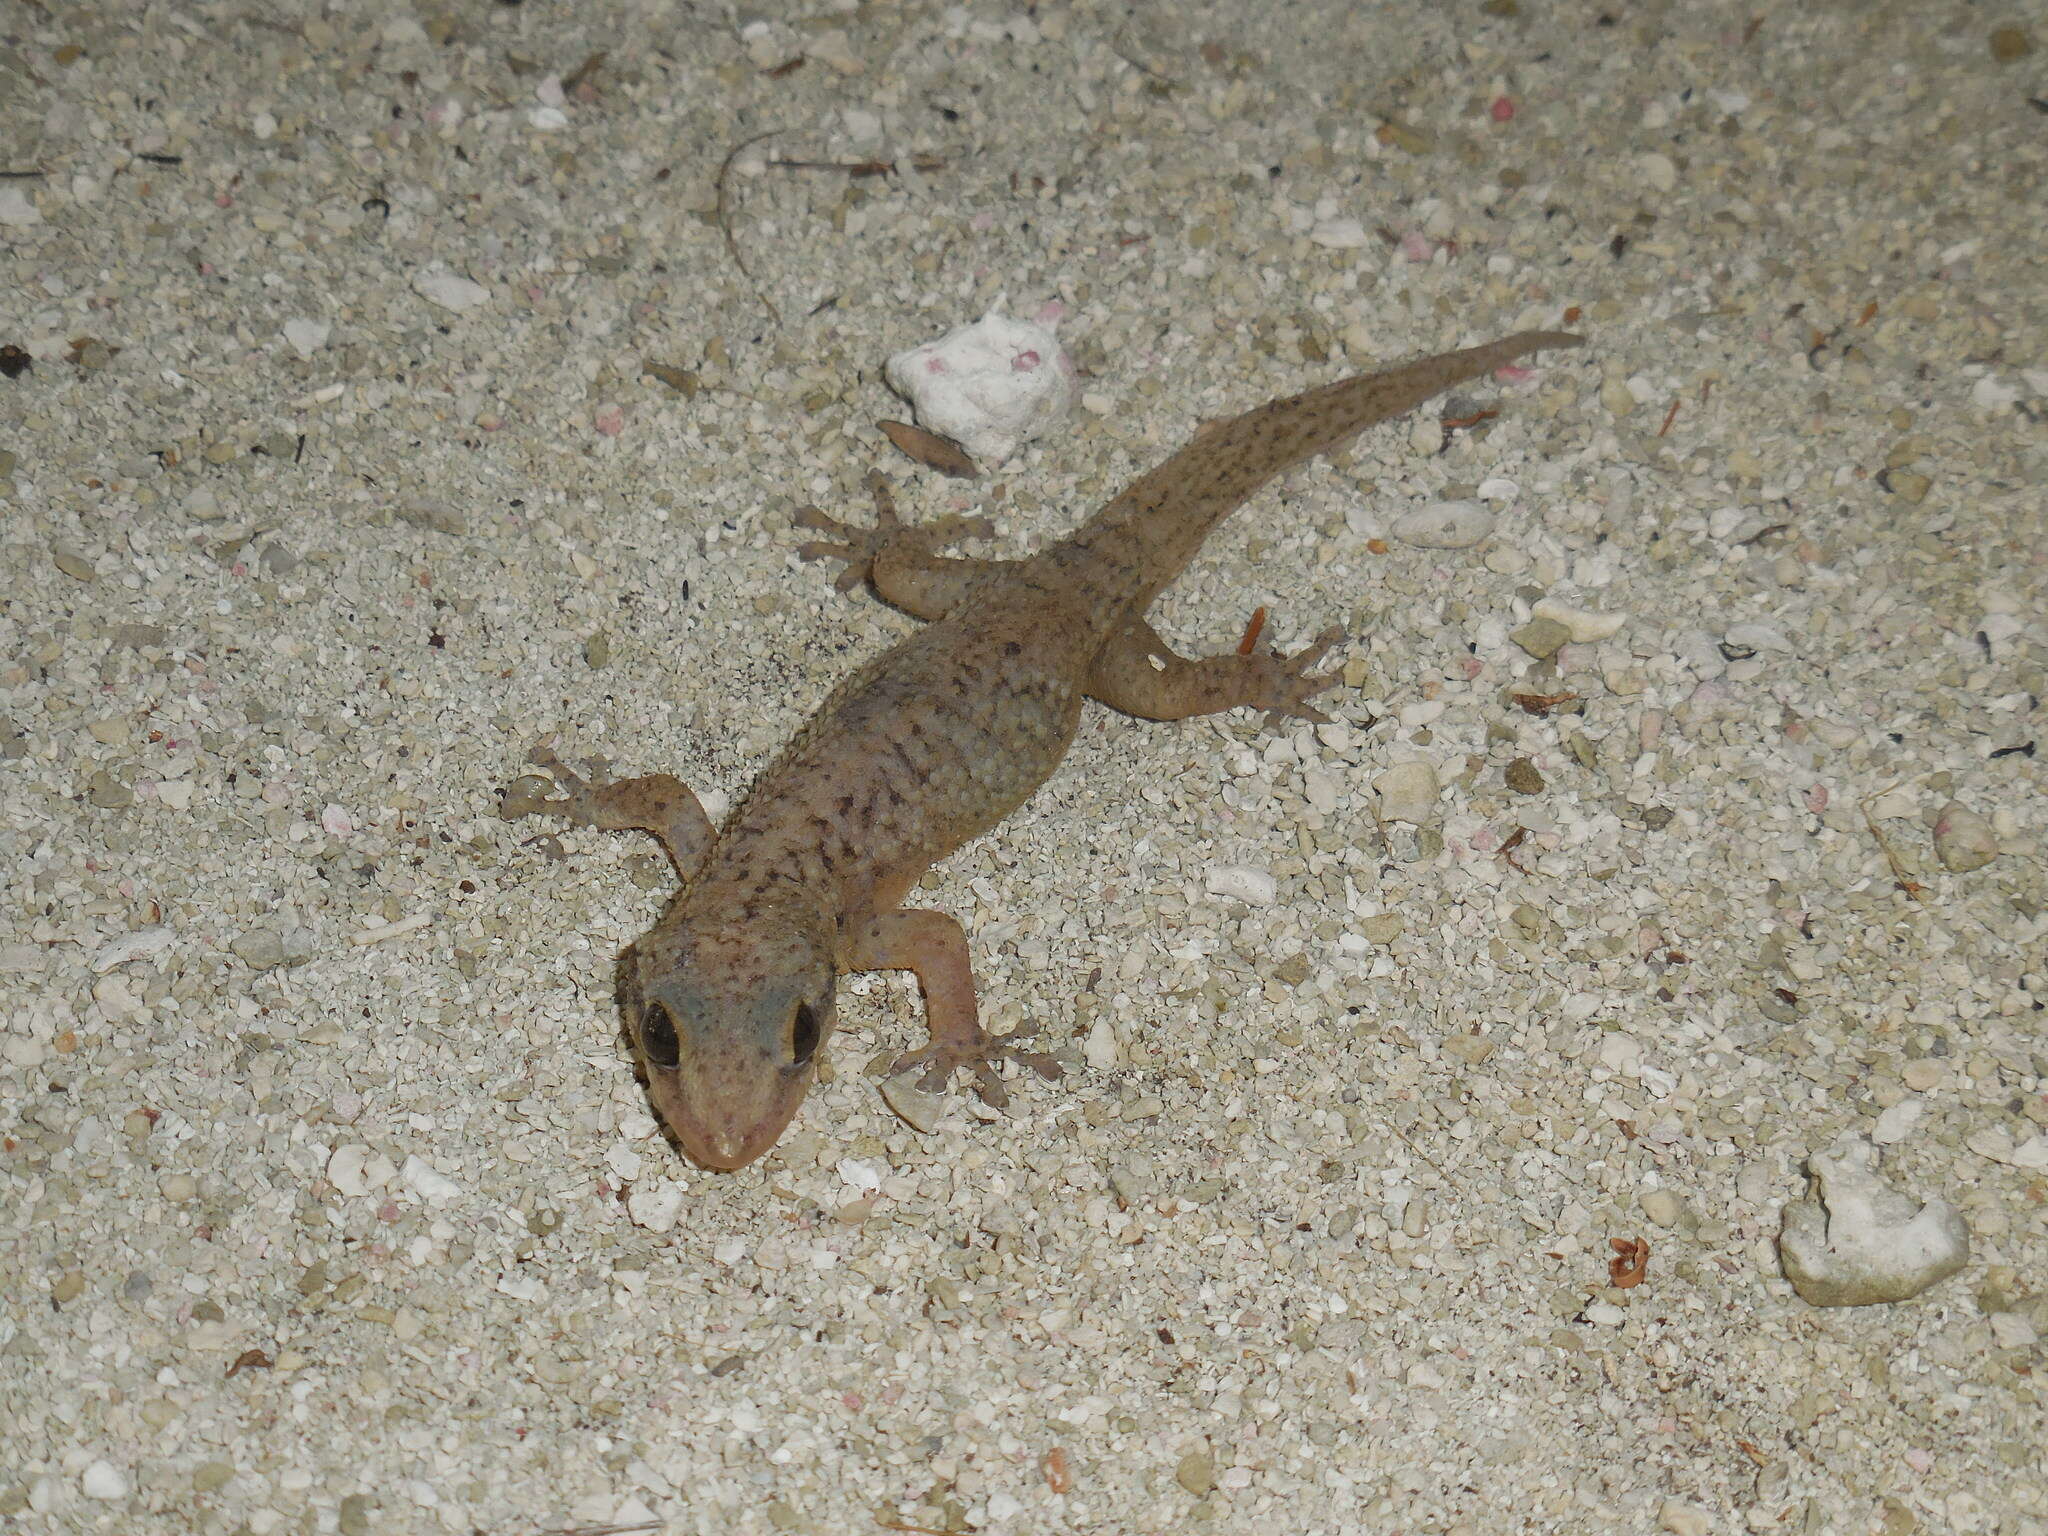 Image of Belize Leaf-toed  Gecko